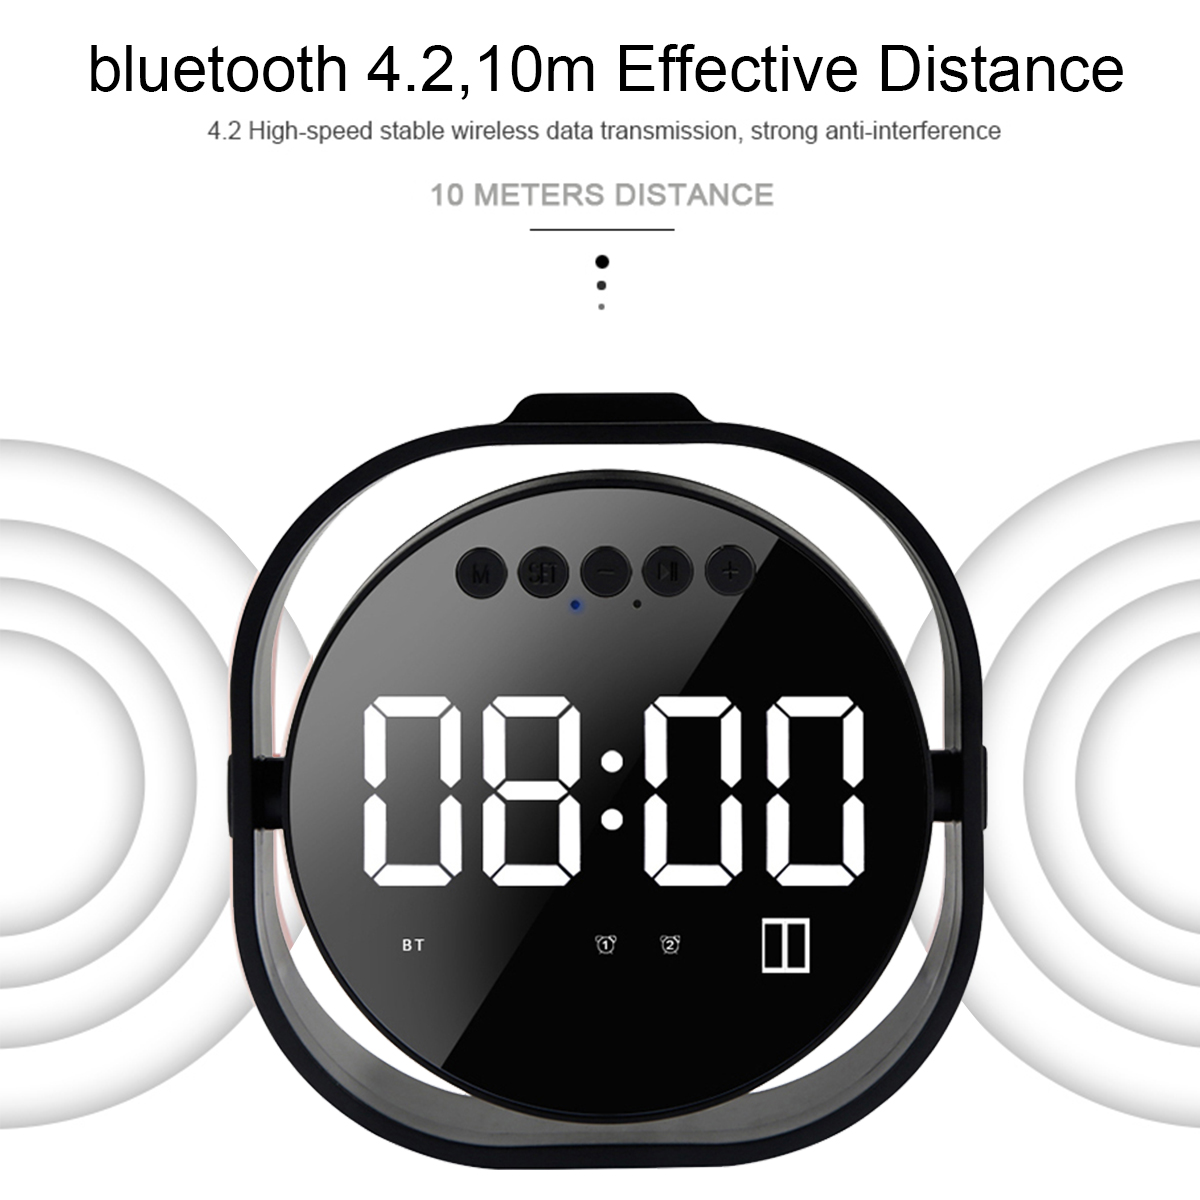 LED-Display-Dual-Alarm-Clock-Dual-Units-Wireless-bluetooth-Bass-Speaker-FM-Radio-USB-Port-Mirror-Spe-1490344-10